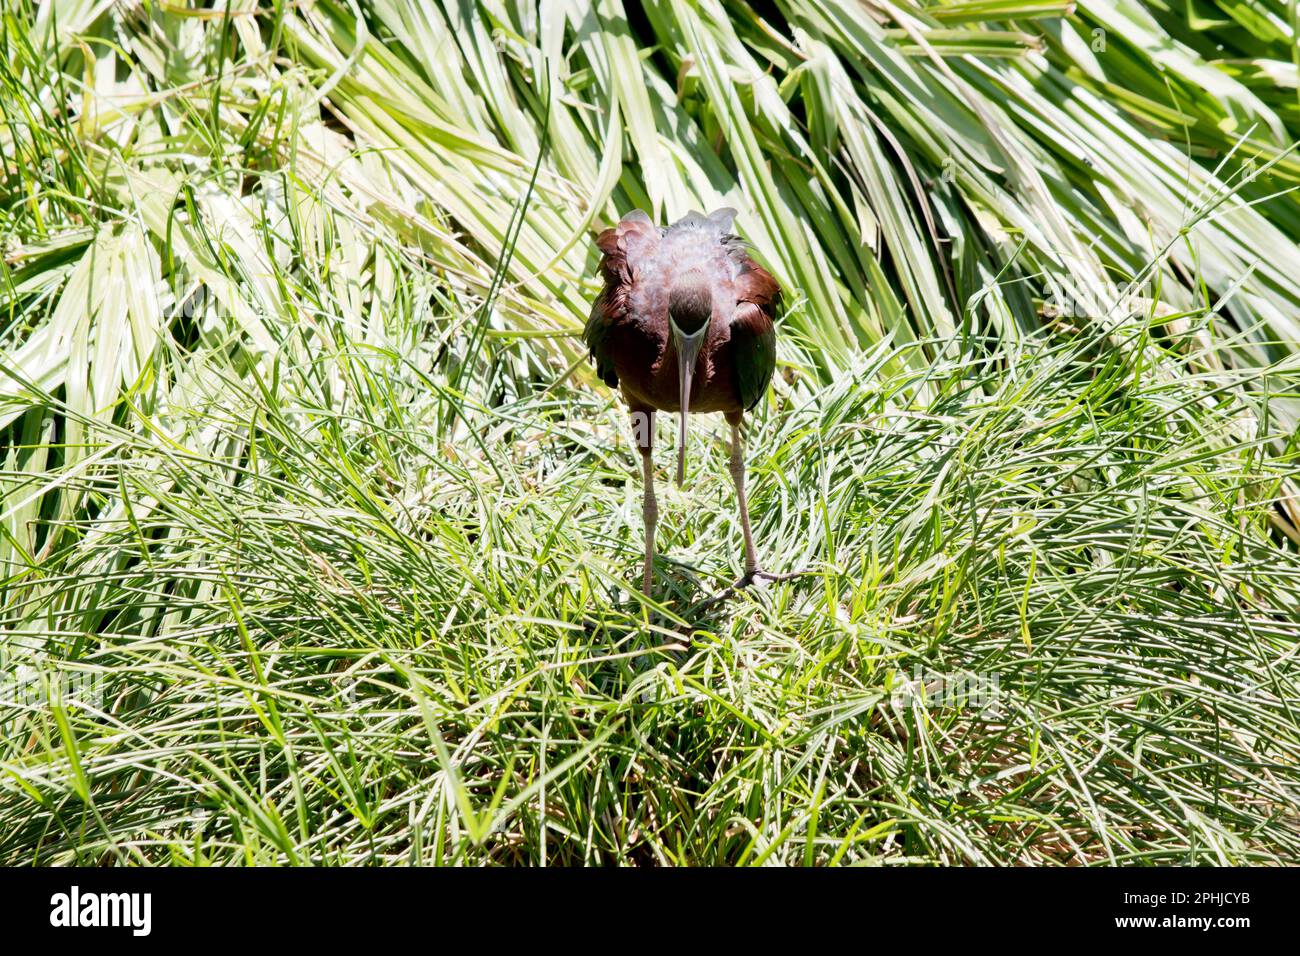 Das Glossy Ibis hat einen markanten langen, nach unten gewölbten Schirm, der olivbraun ist. Die Gesichtshaut ist blau-grau mit einer weißen Linie, die sich ausbreitet Stockfoto